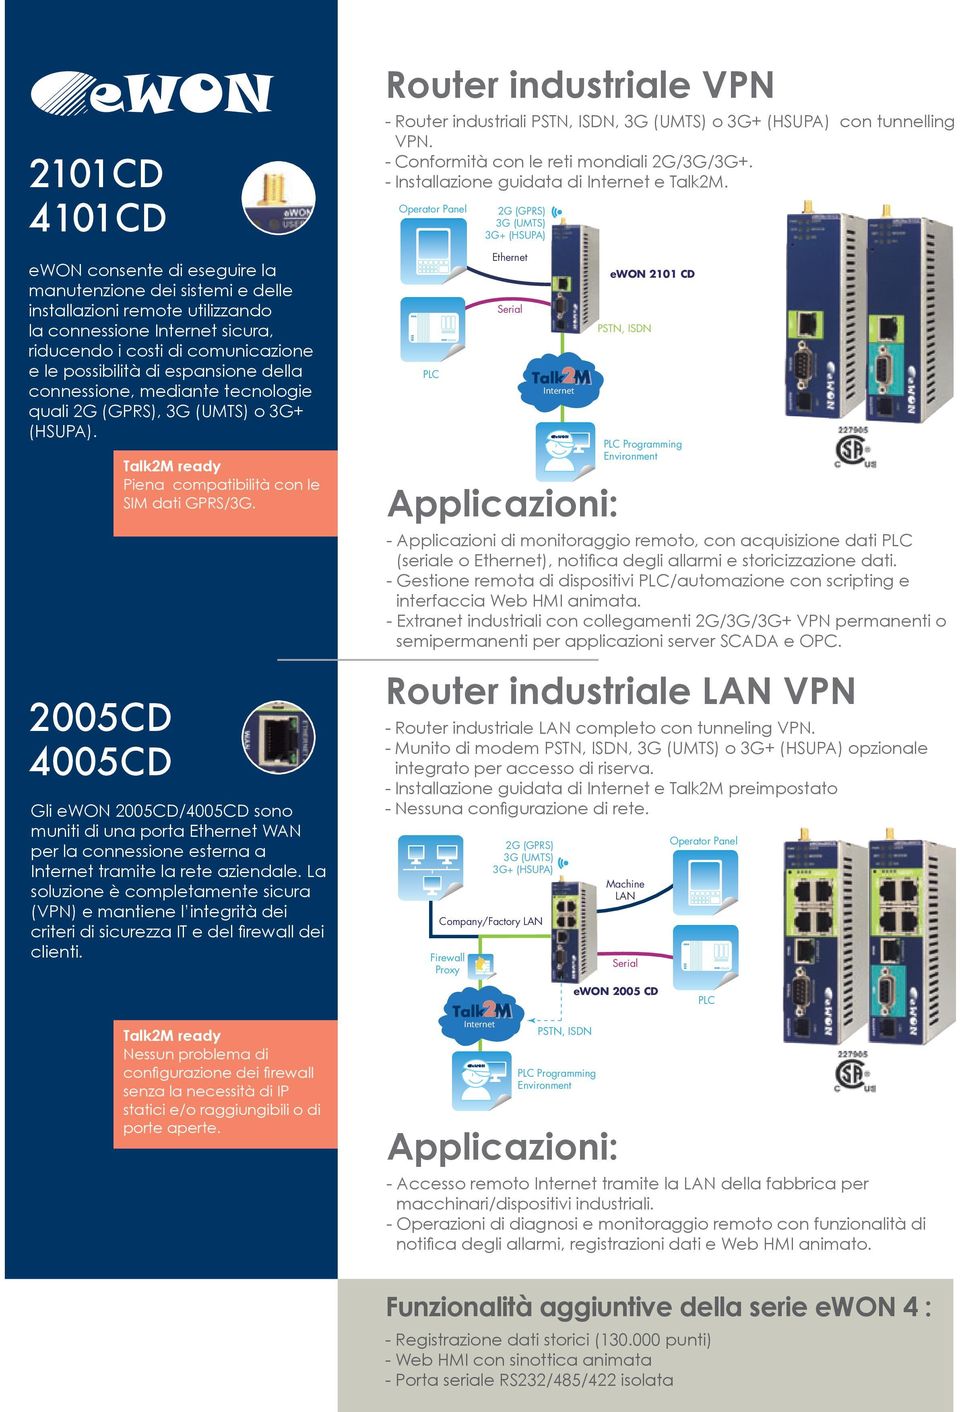 Gli ewon 2005CD/4005CD sono muniti di una porta Ethernet WAN per la connessione esterna a Internet tramite la rete aziendale.